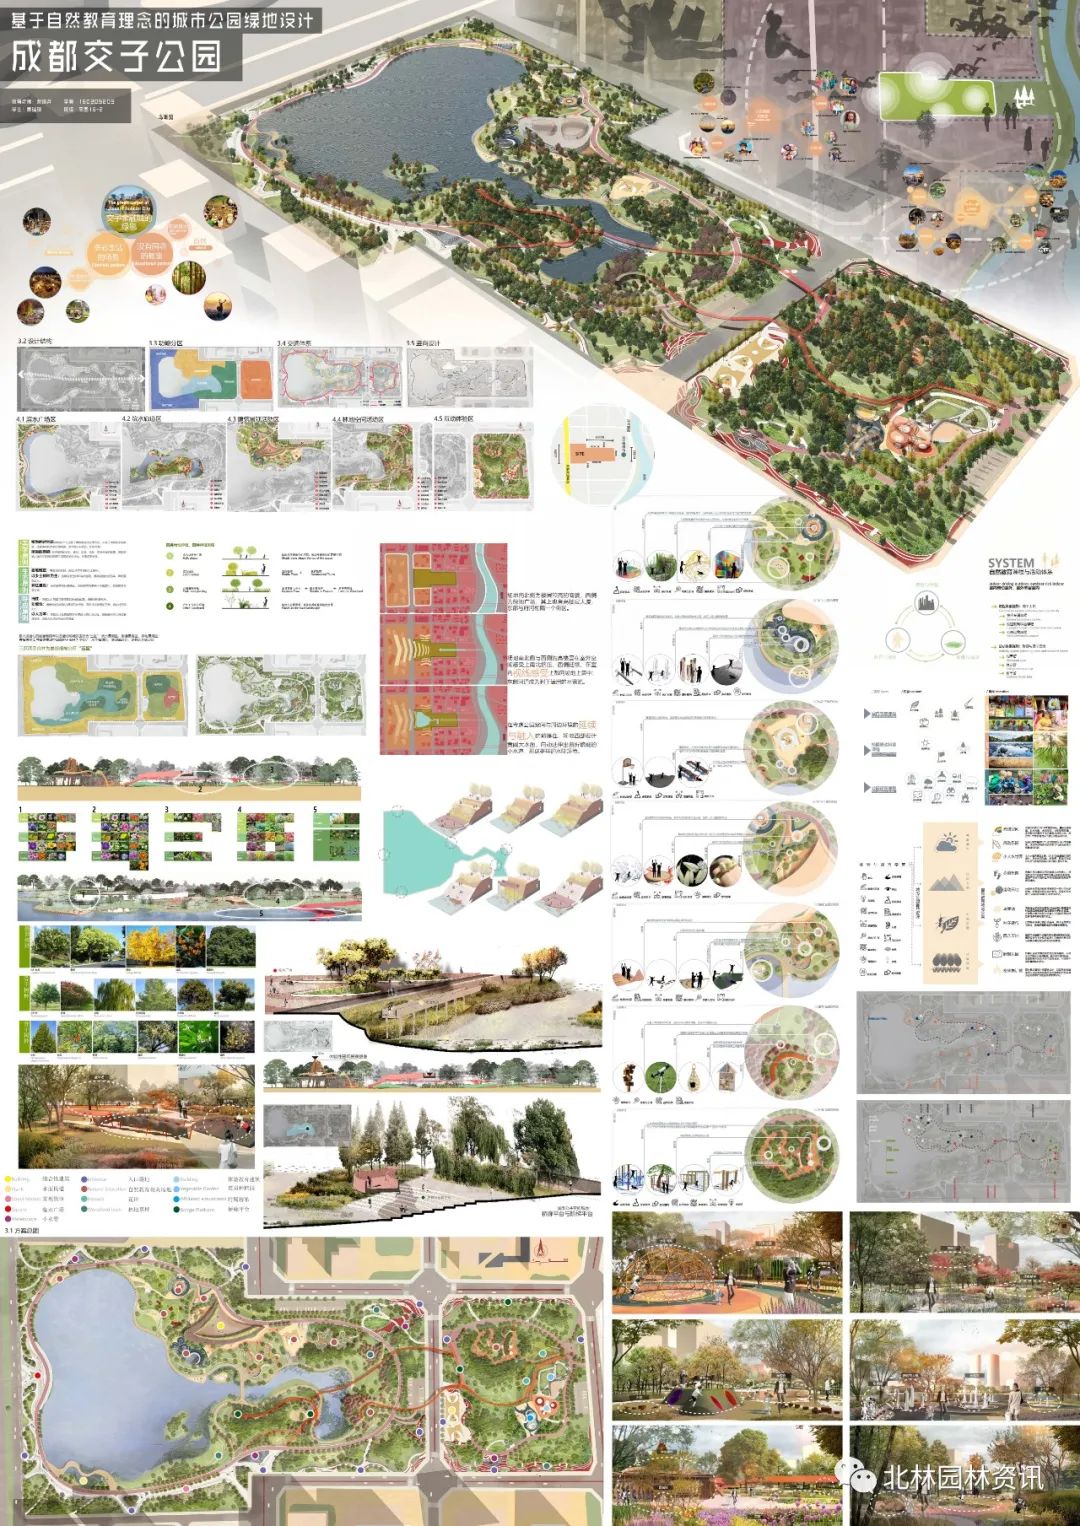 北京林业大学园林学院2020届本科毕业设计展(风景园林专业)_园林景观